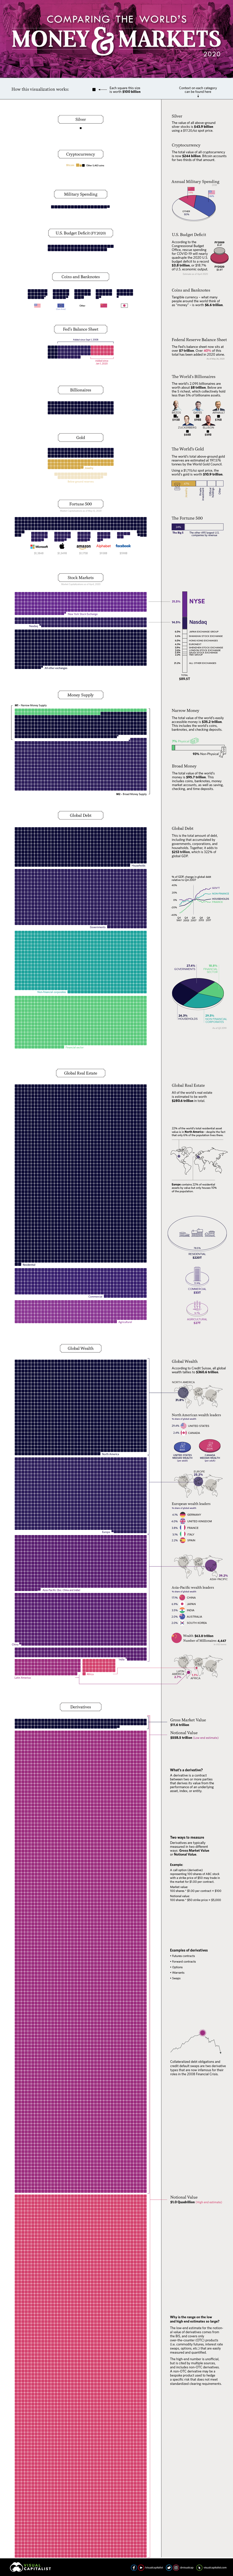 Wszystkie światowe rynki i pieniądze w jednej infografice